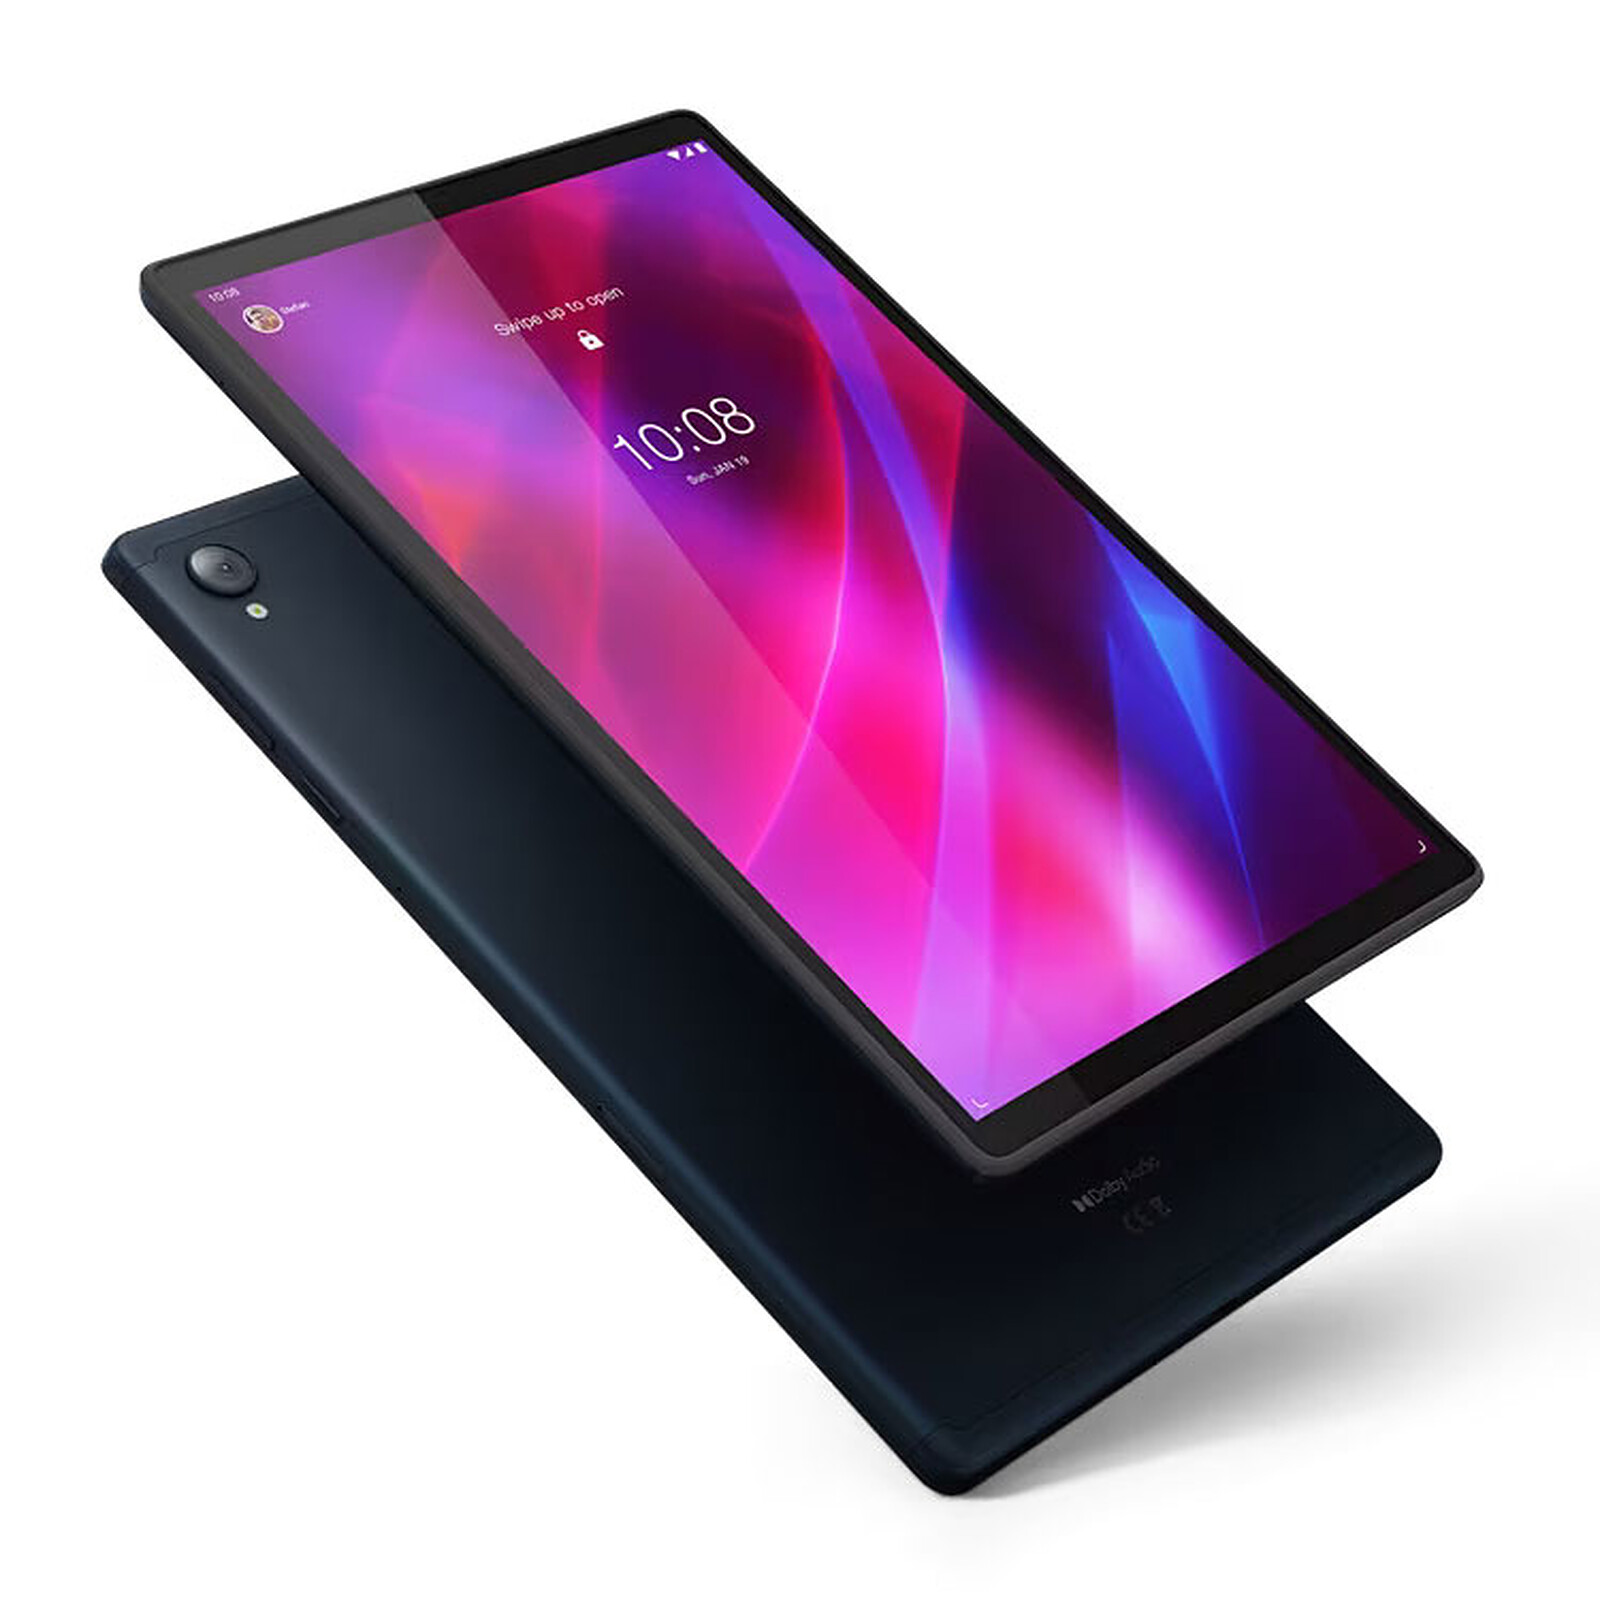 10,1 pulgadas y sonido con Dolby Atmos: esta tableta Lenovo tiene todo lo  que necesitas